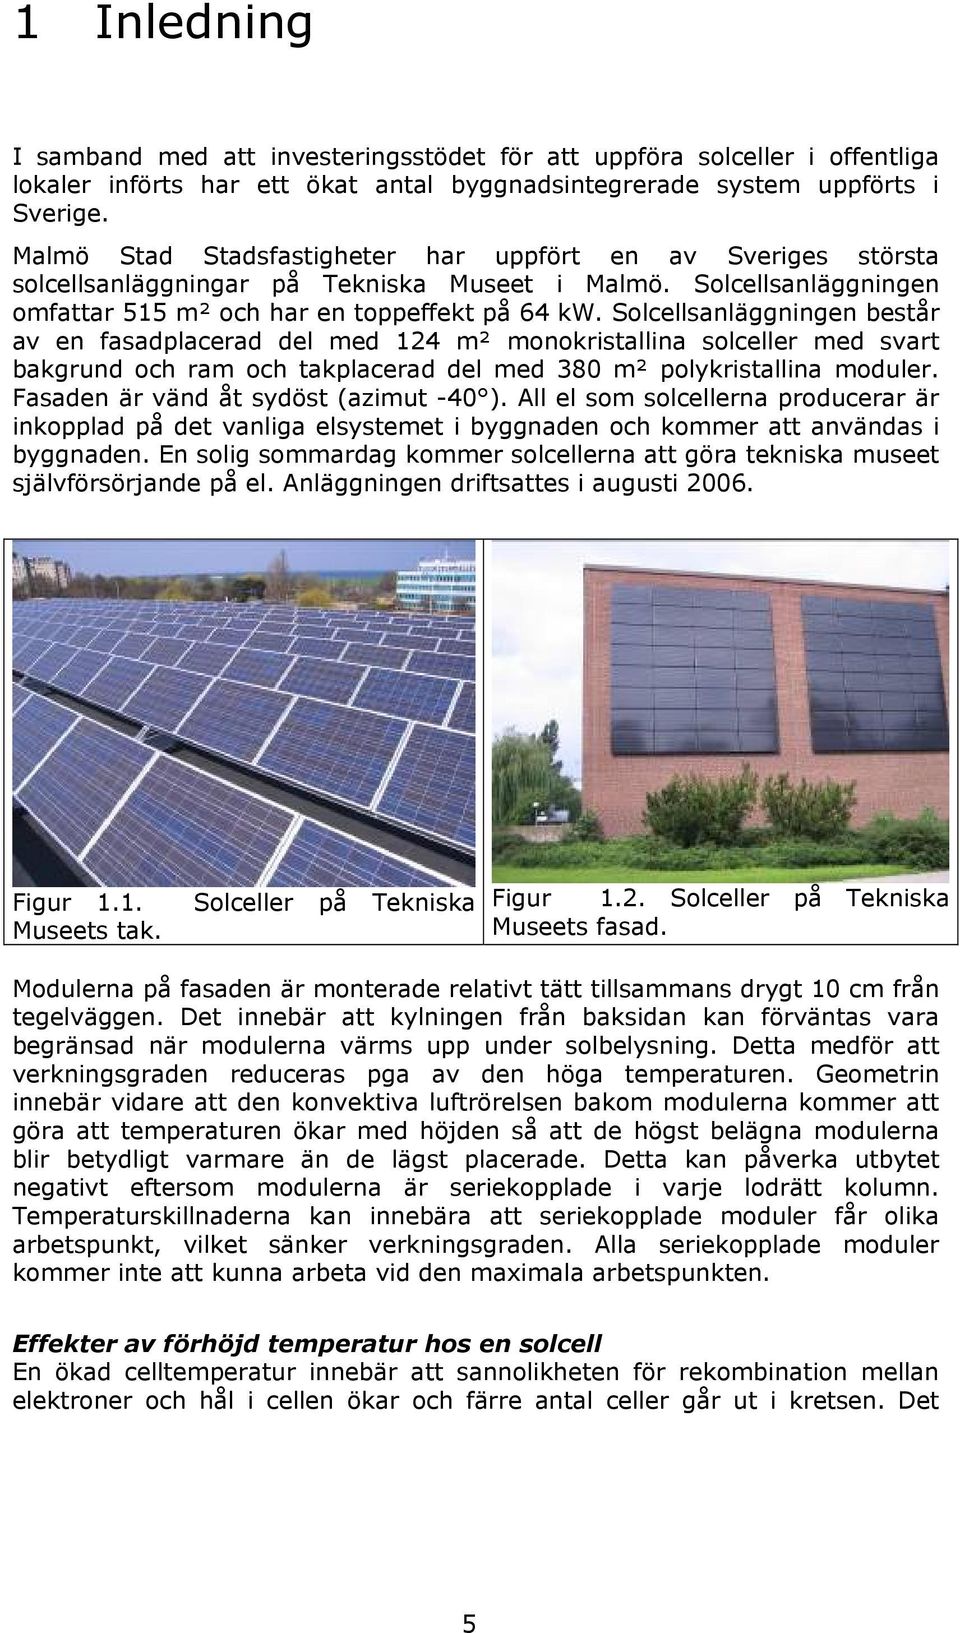 Solcellsanläggningen består av en fasadplacerad del med 124 m² monokristallina solceller med svart bakgrund och ram och takplacerad del med 38 m² polykristallina moduler.